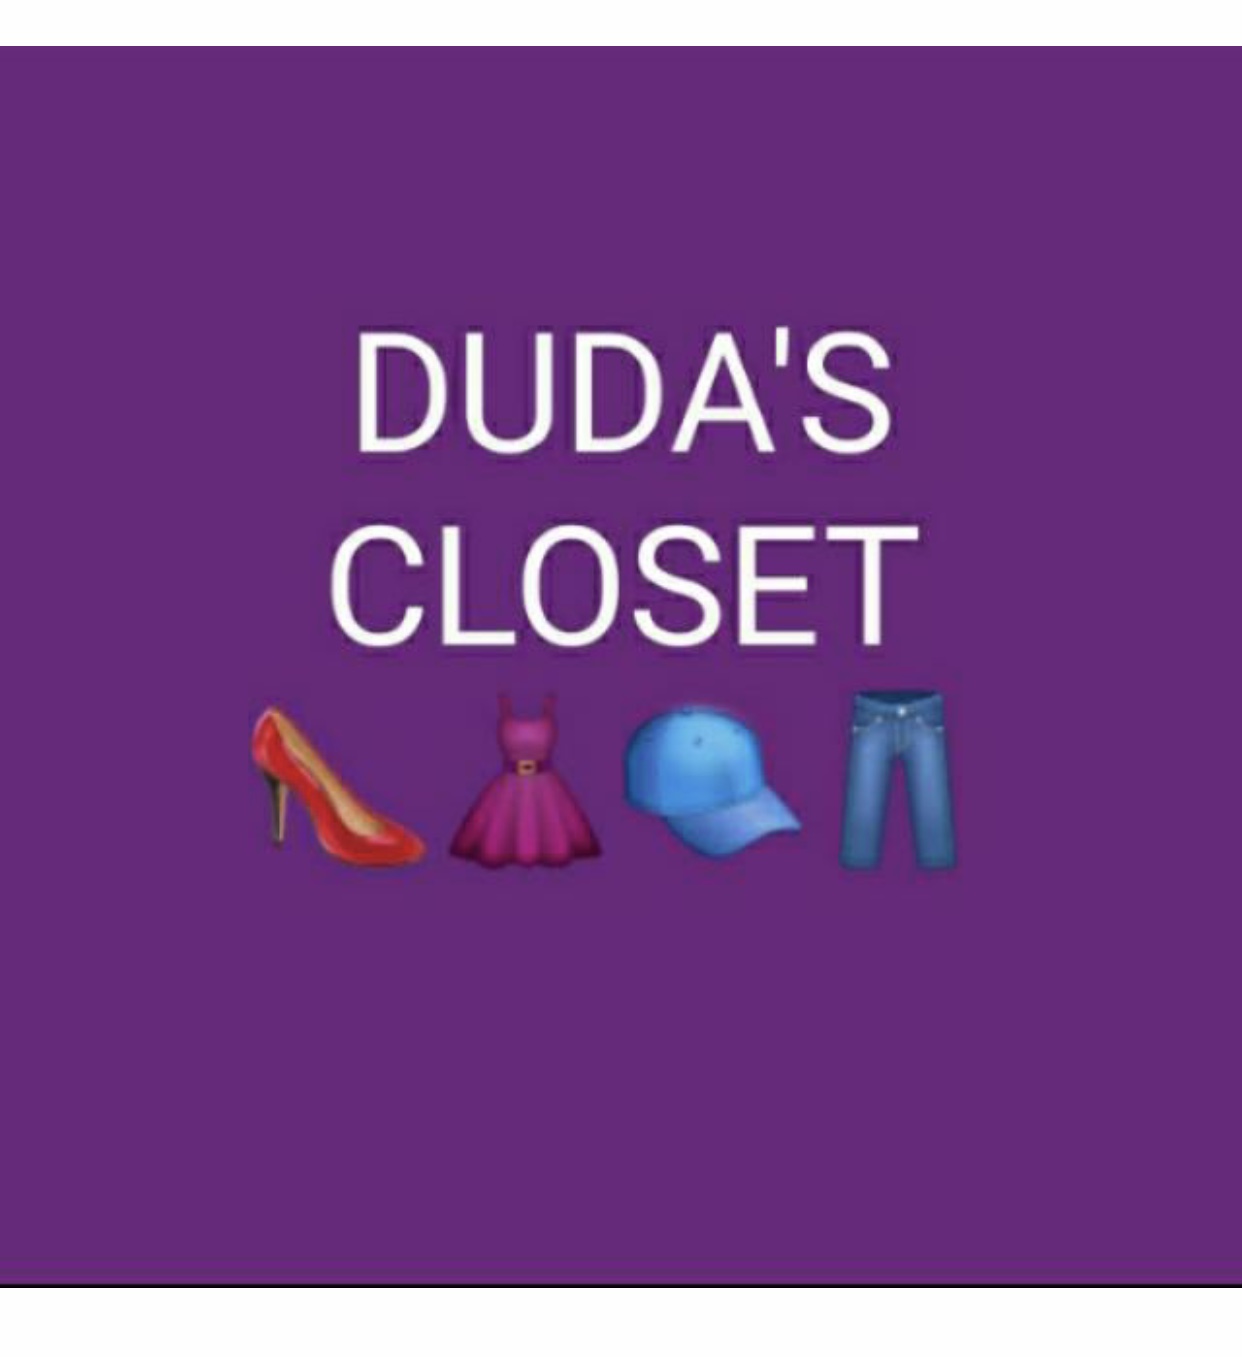 Dudas’Closet